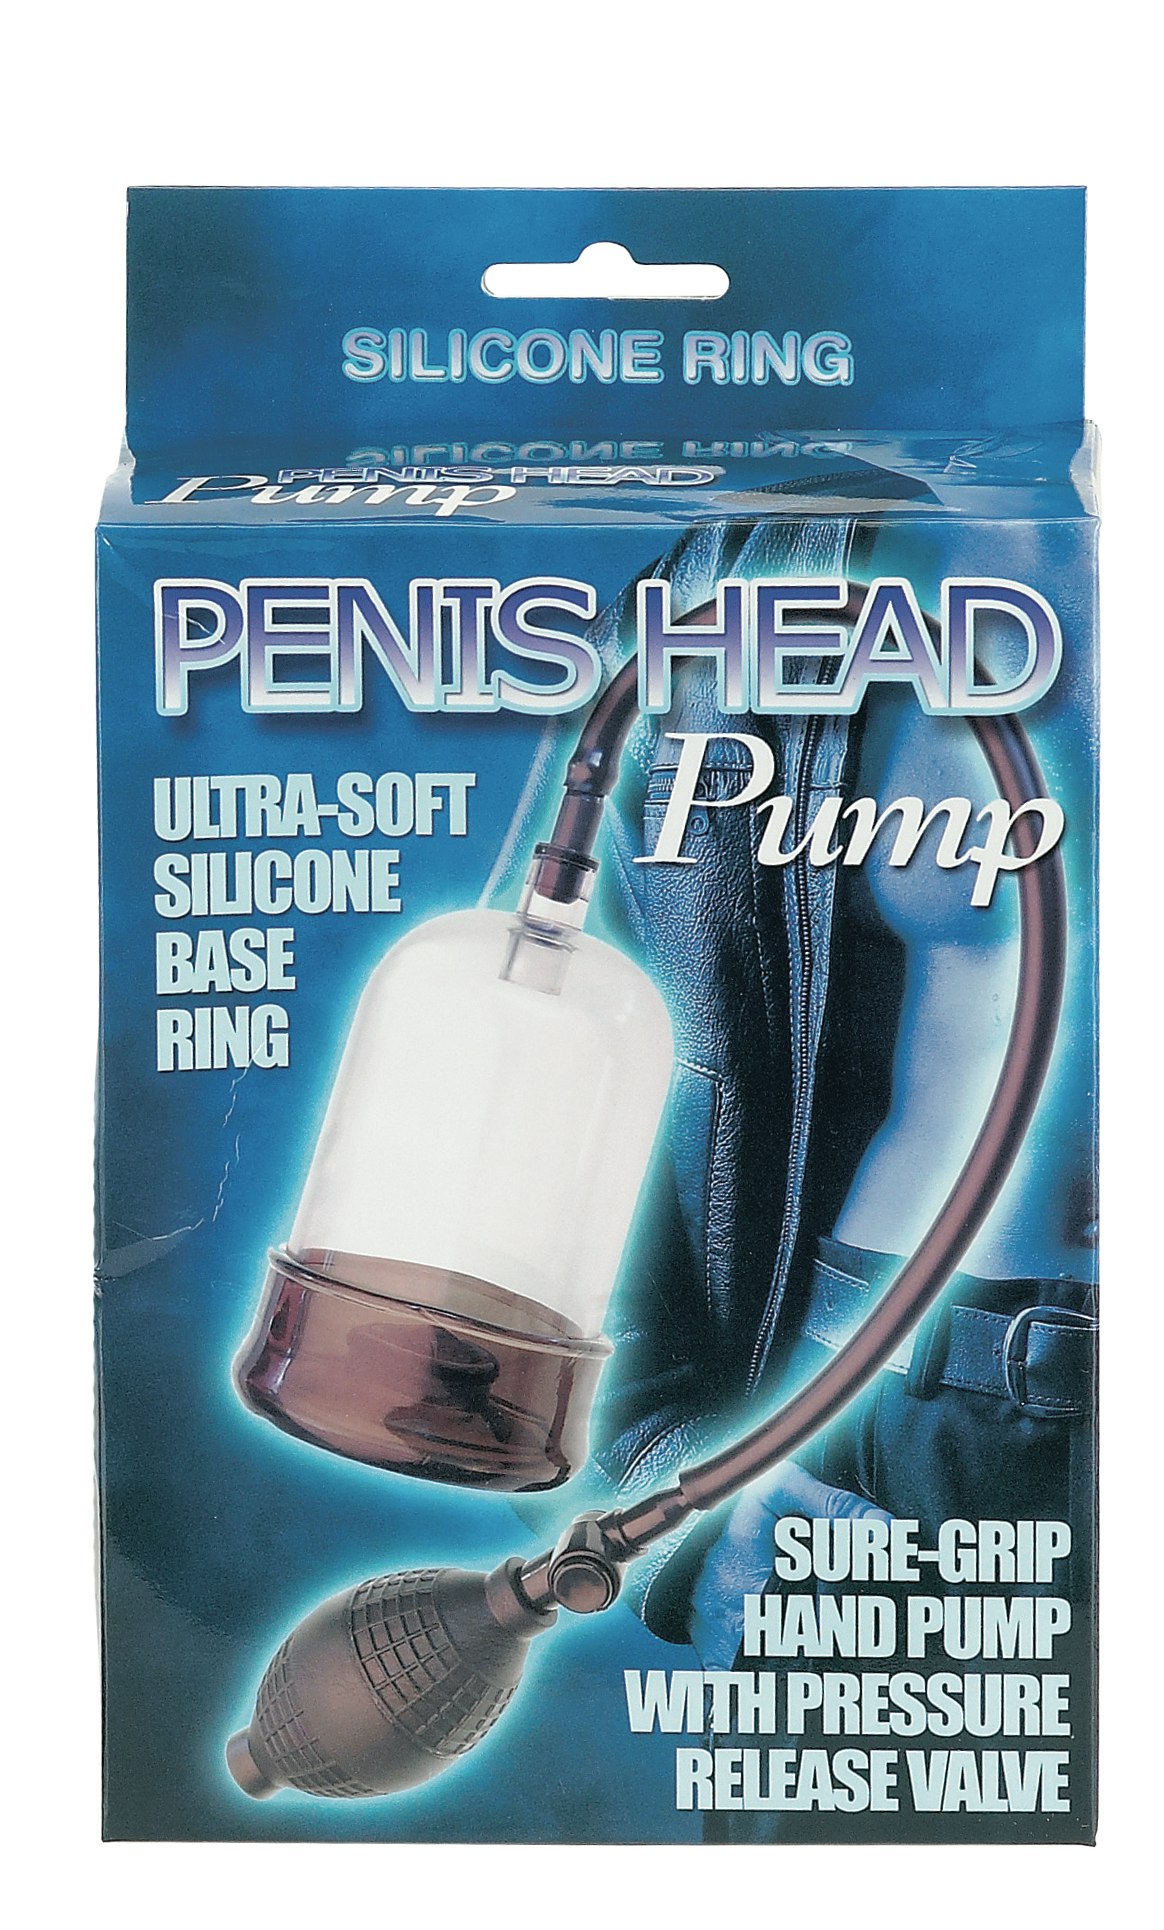 Penis head pump